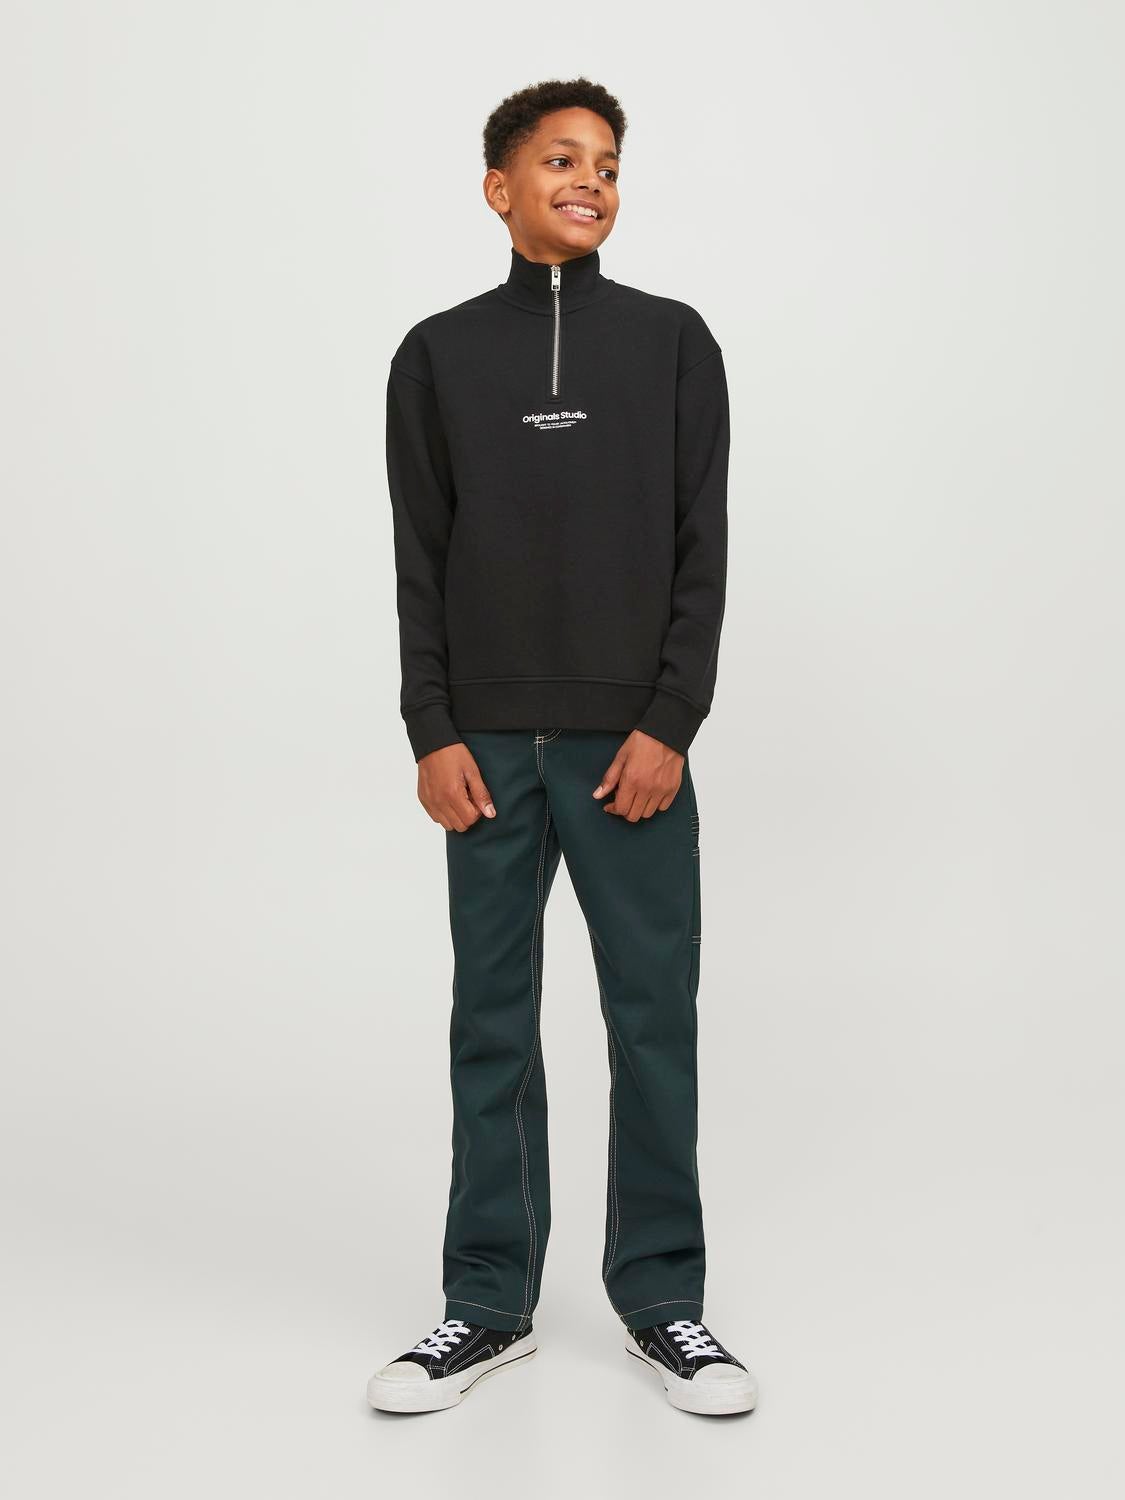 Printet Sweatshirt med lynlås Til drenge